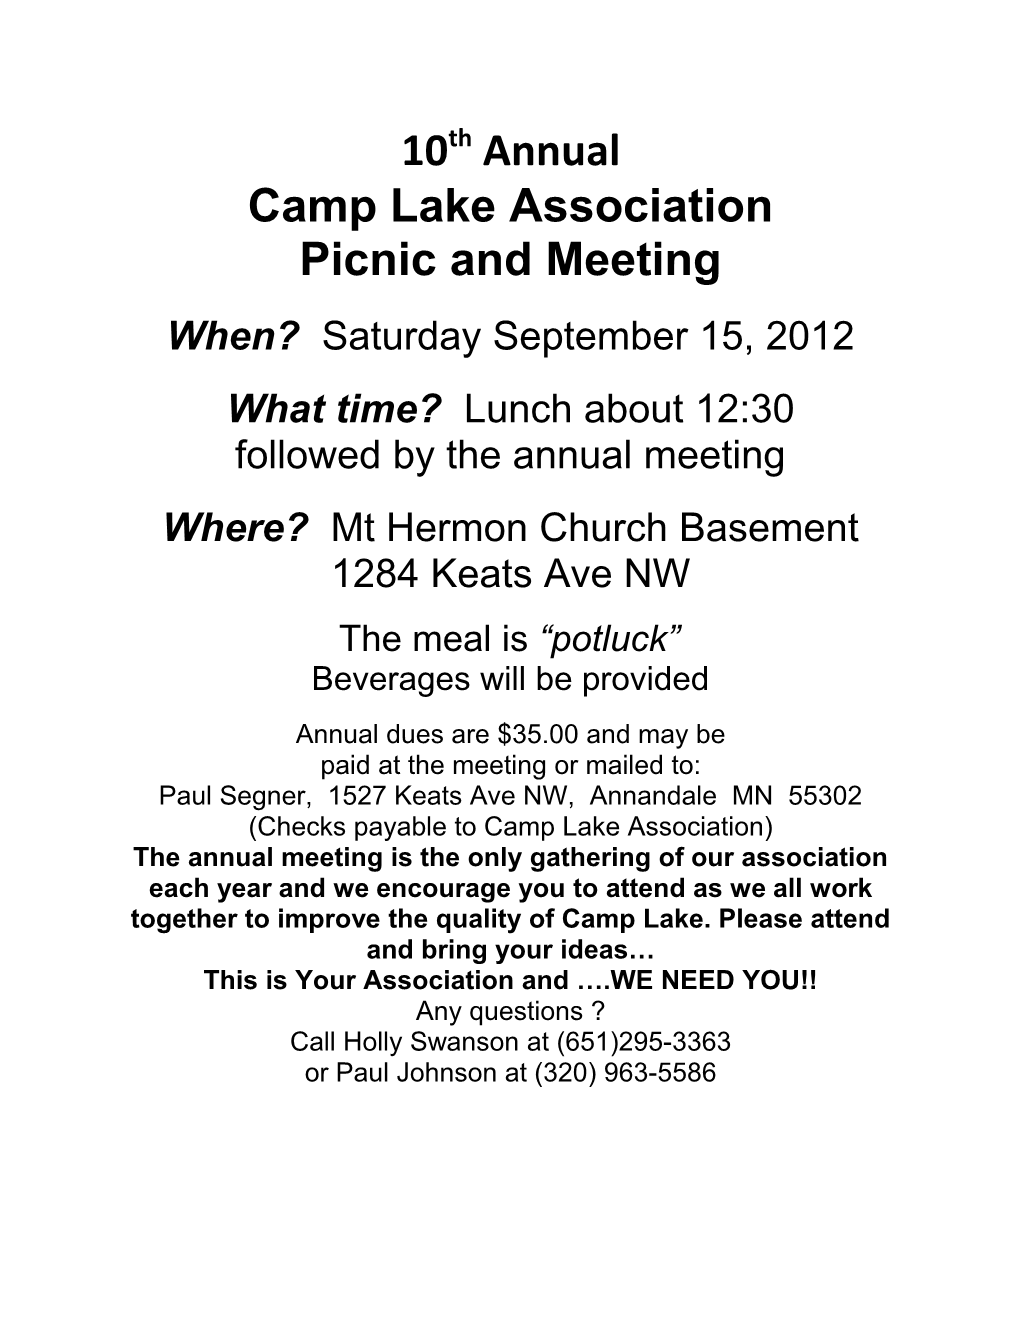 Camp Lake Association